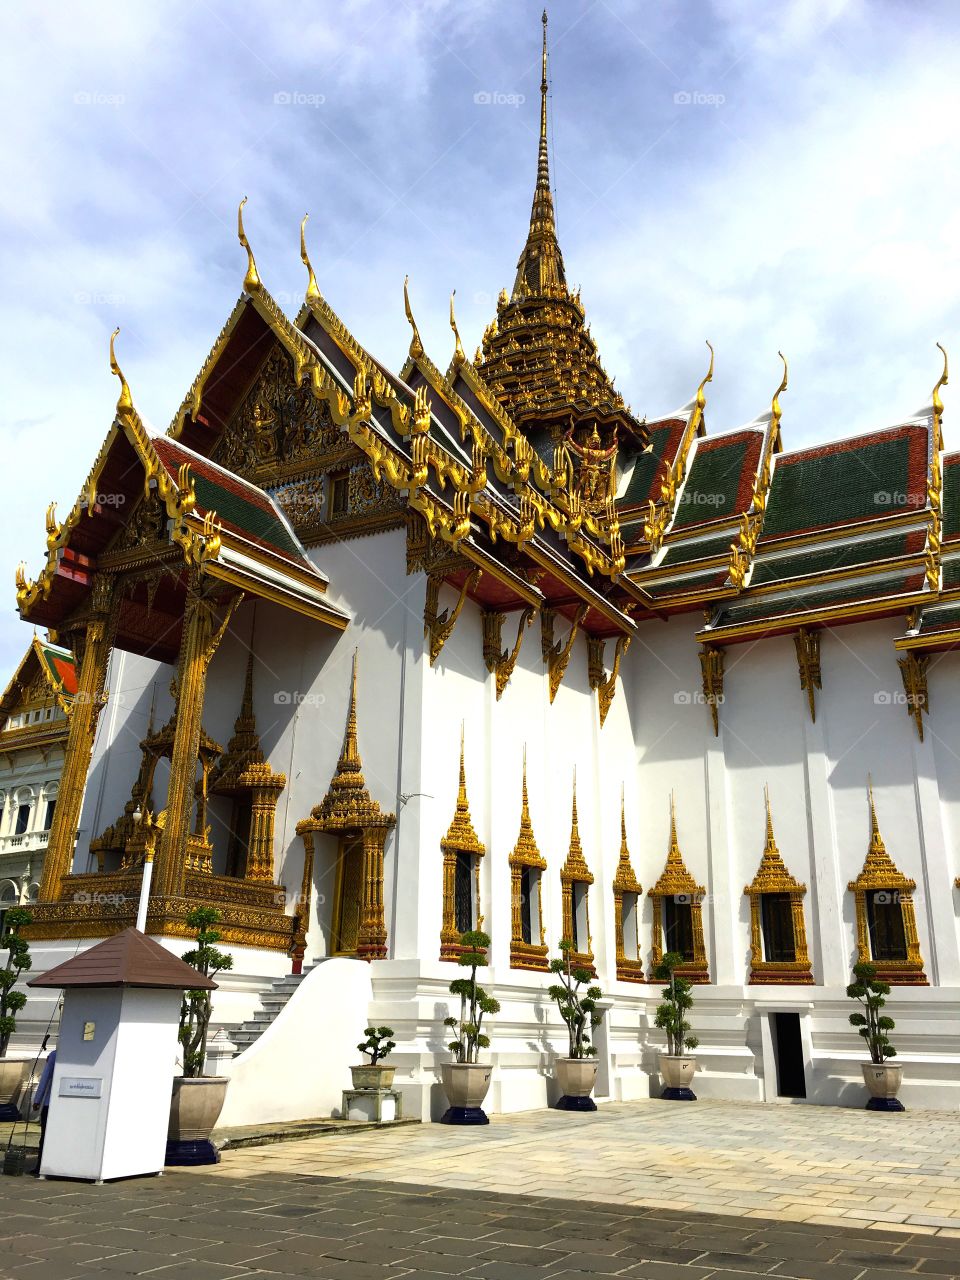 Grand Palace / Bangkok Thailand 79